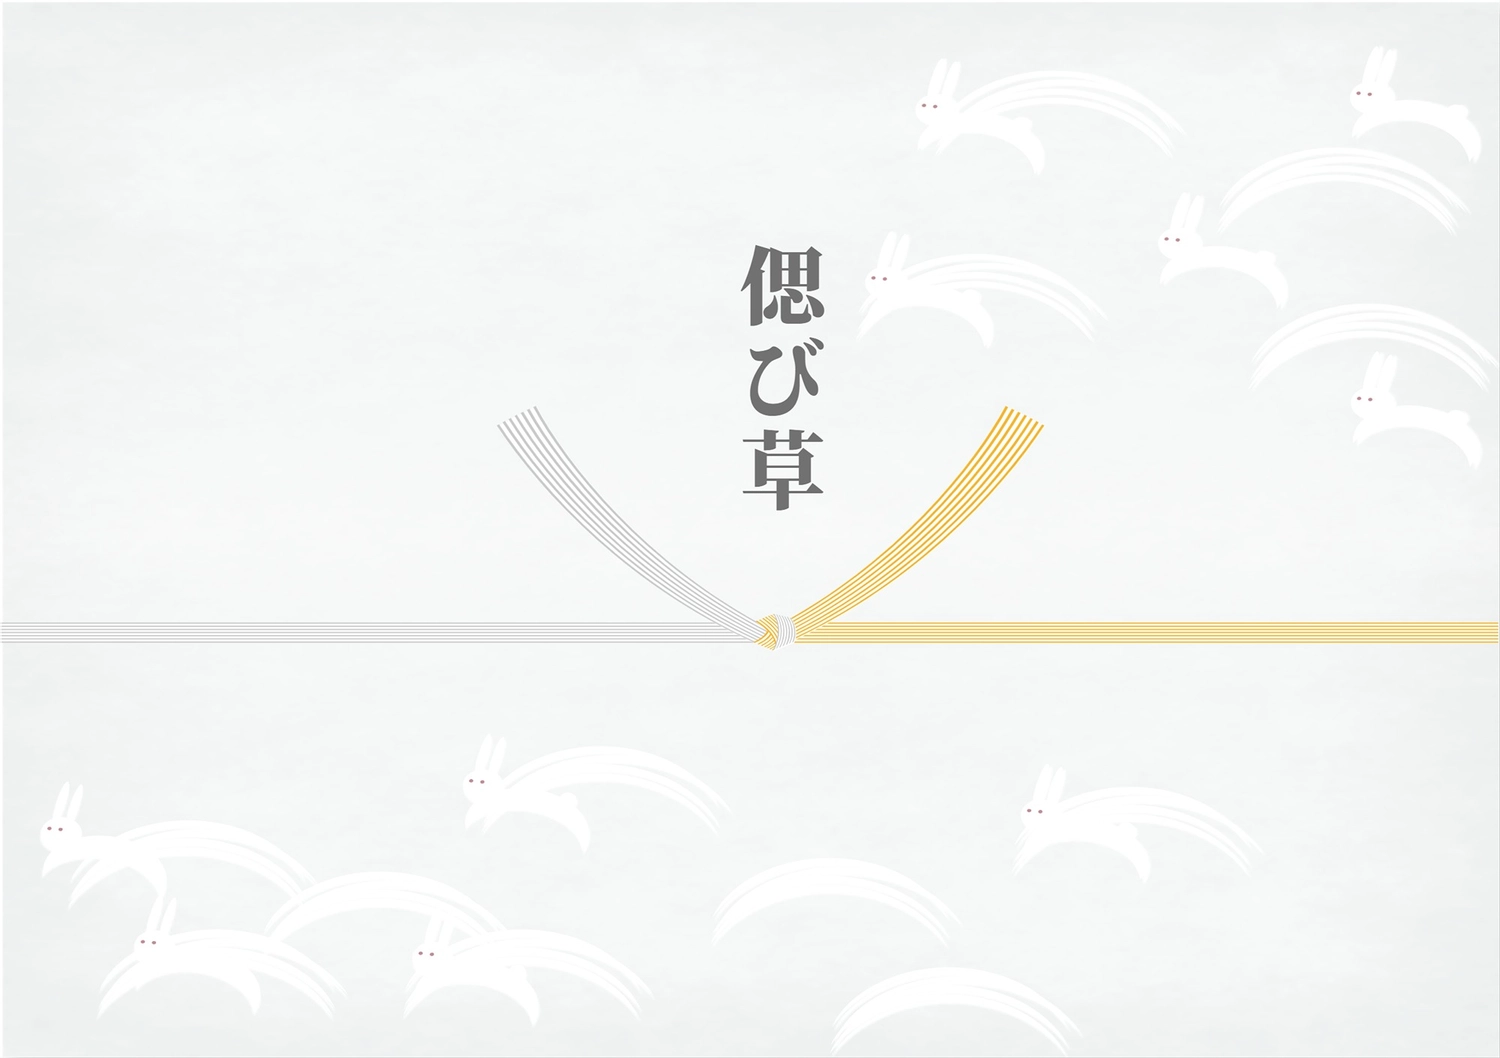 偲び草, An illustration, in return, Shinto ritual, Sales promotion tool template